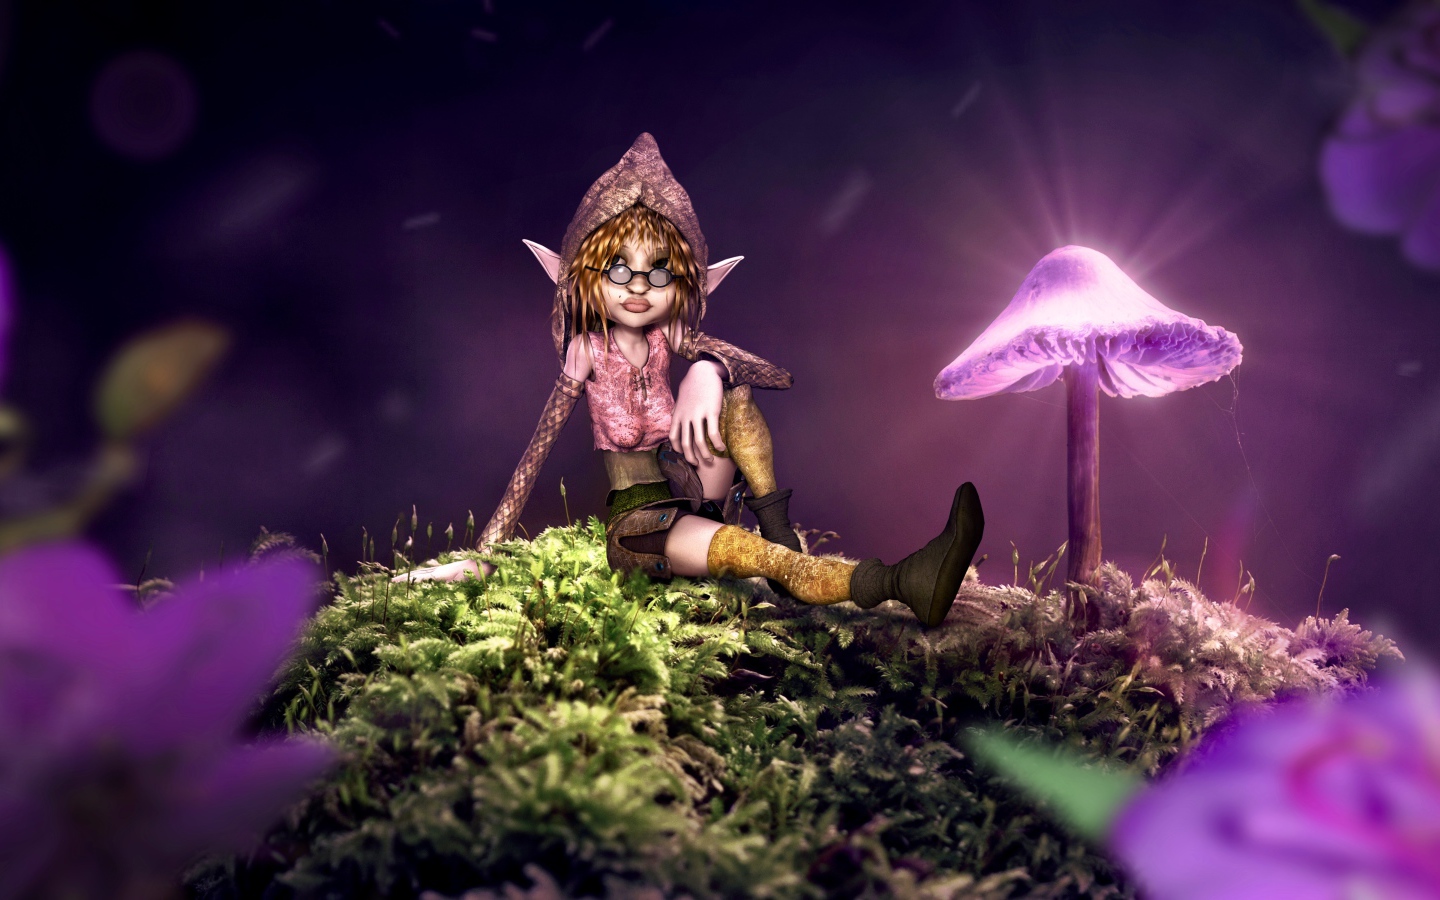 Фантастический эльф сидит на покрытой мхом земле с неоновыми грибами